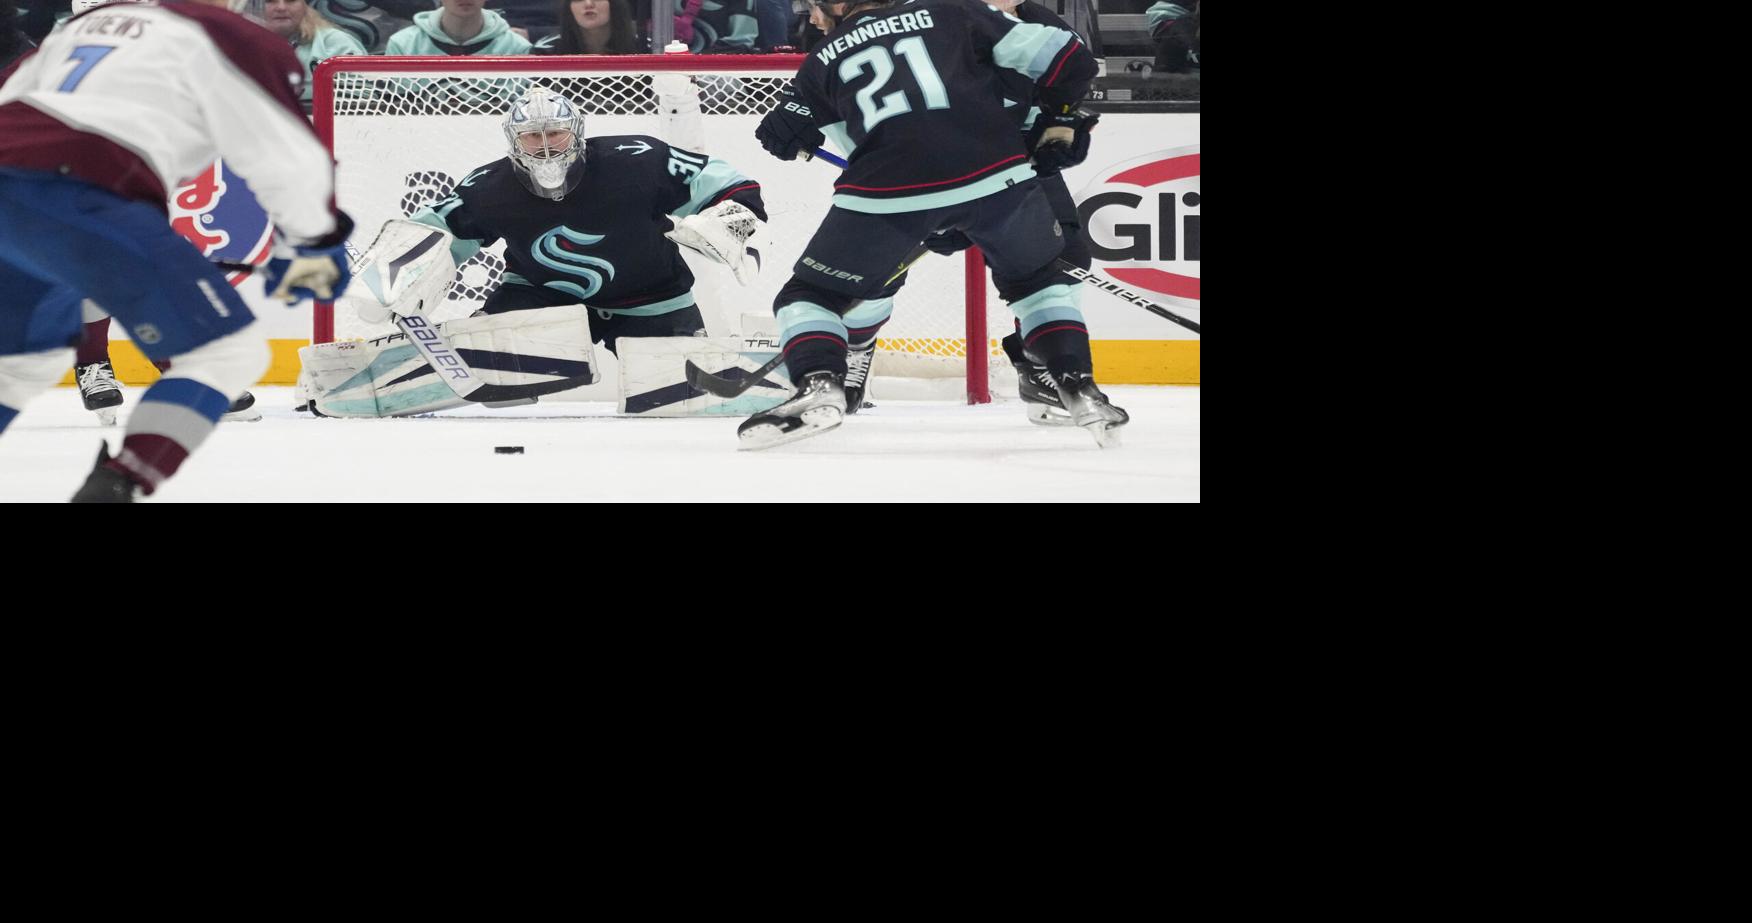 Minnesota Wild (NHL) iPhone 6/7/8 Lock Screen Wallpaper